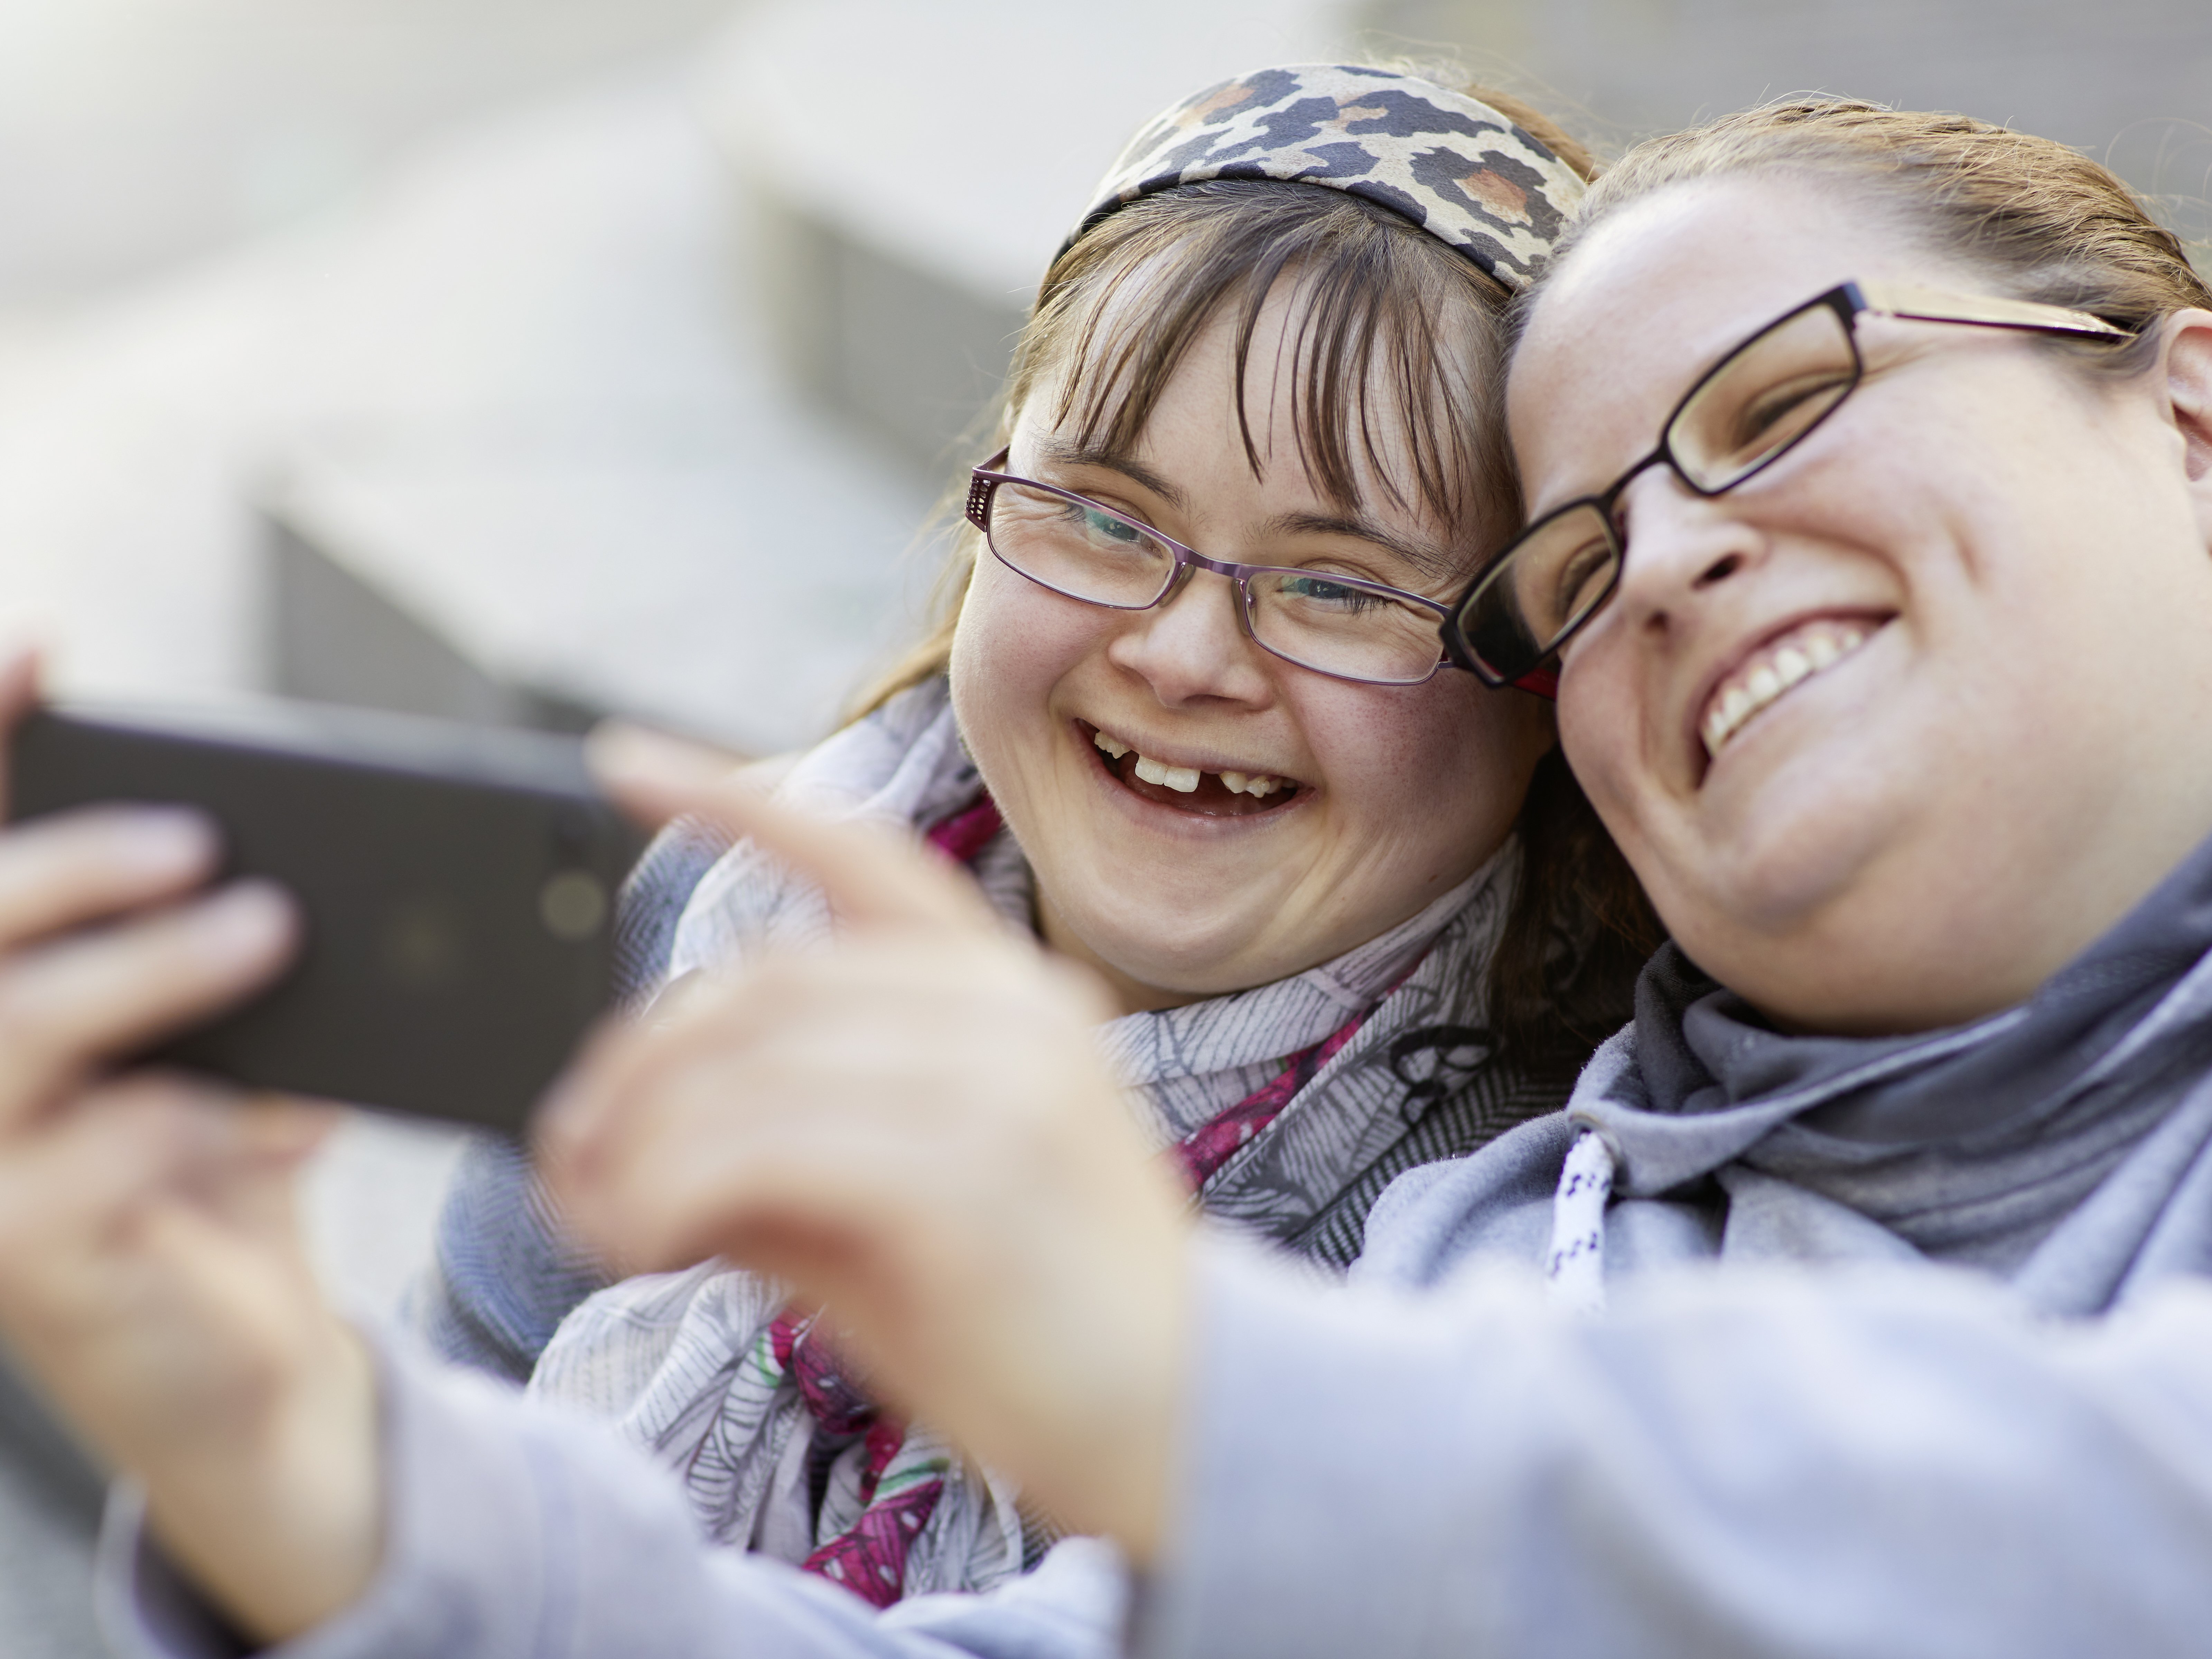 Foto von zwei jungen Frauen, die etwas auf einem Smartphone betrachten.